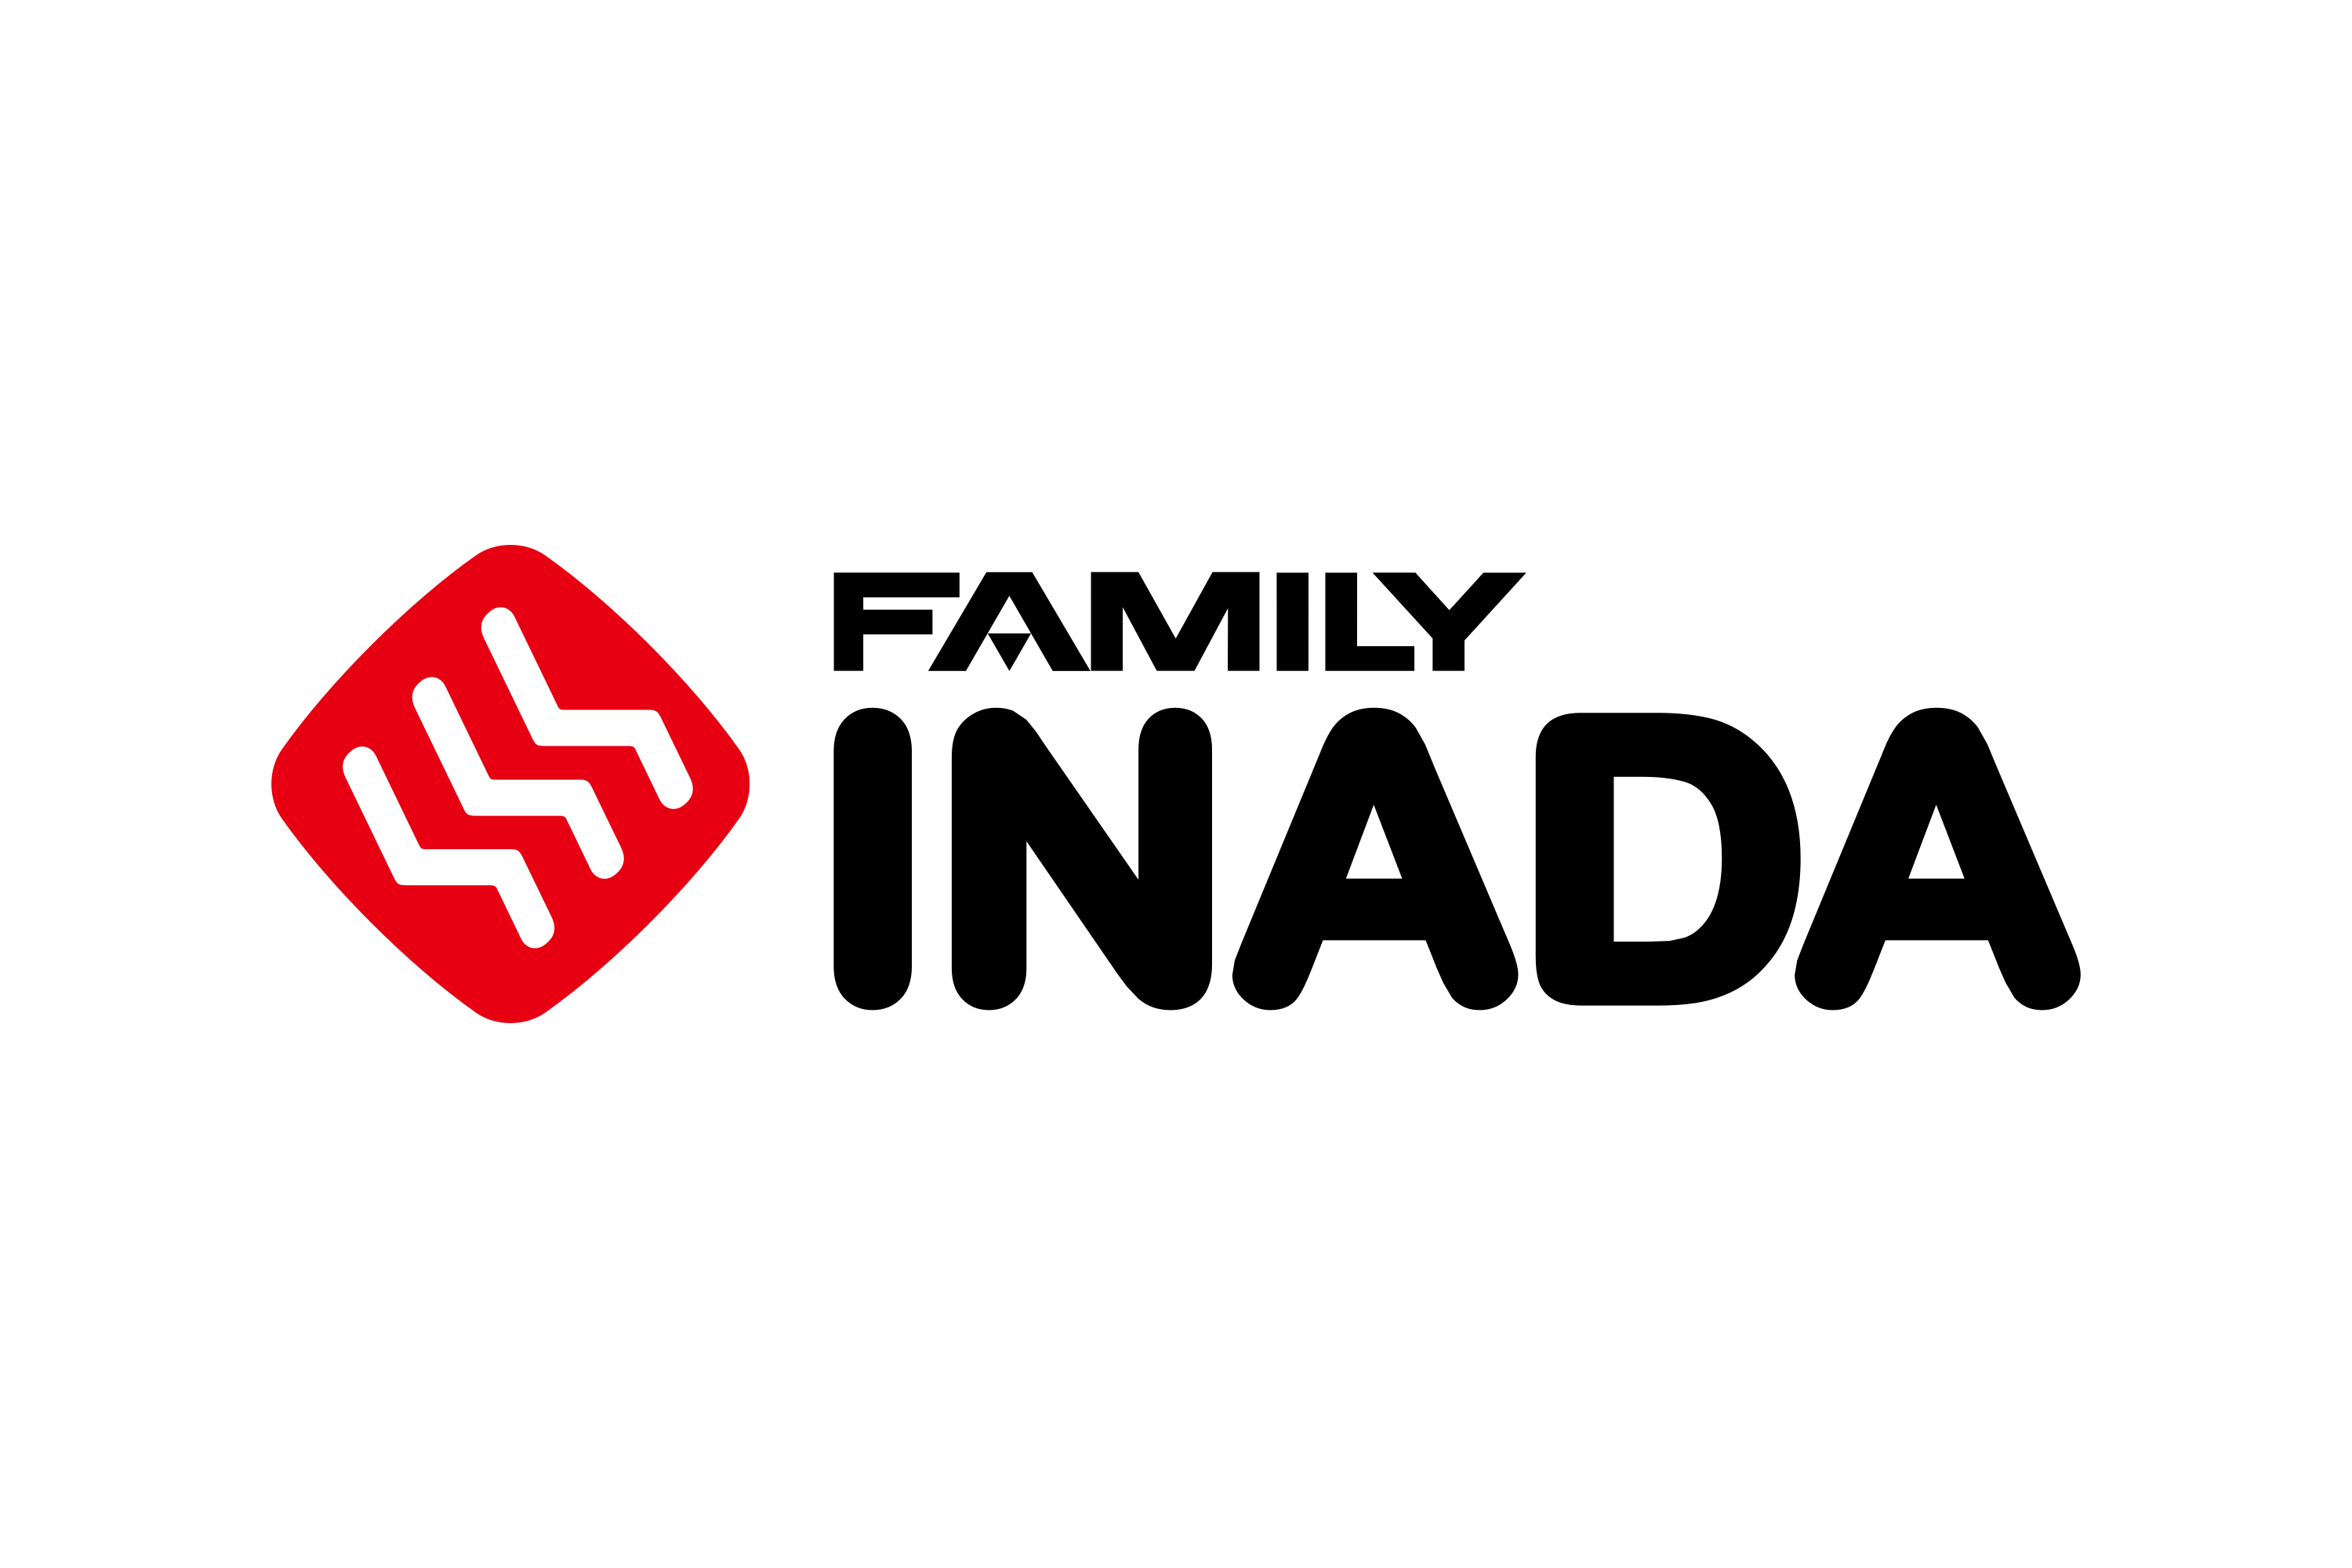 Family Inada Logo